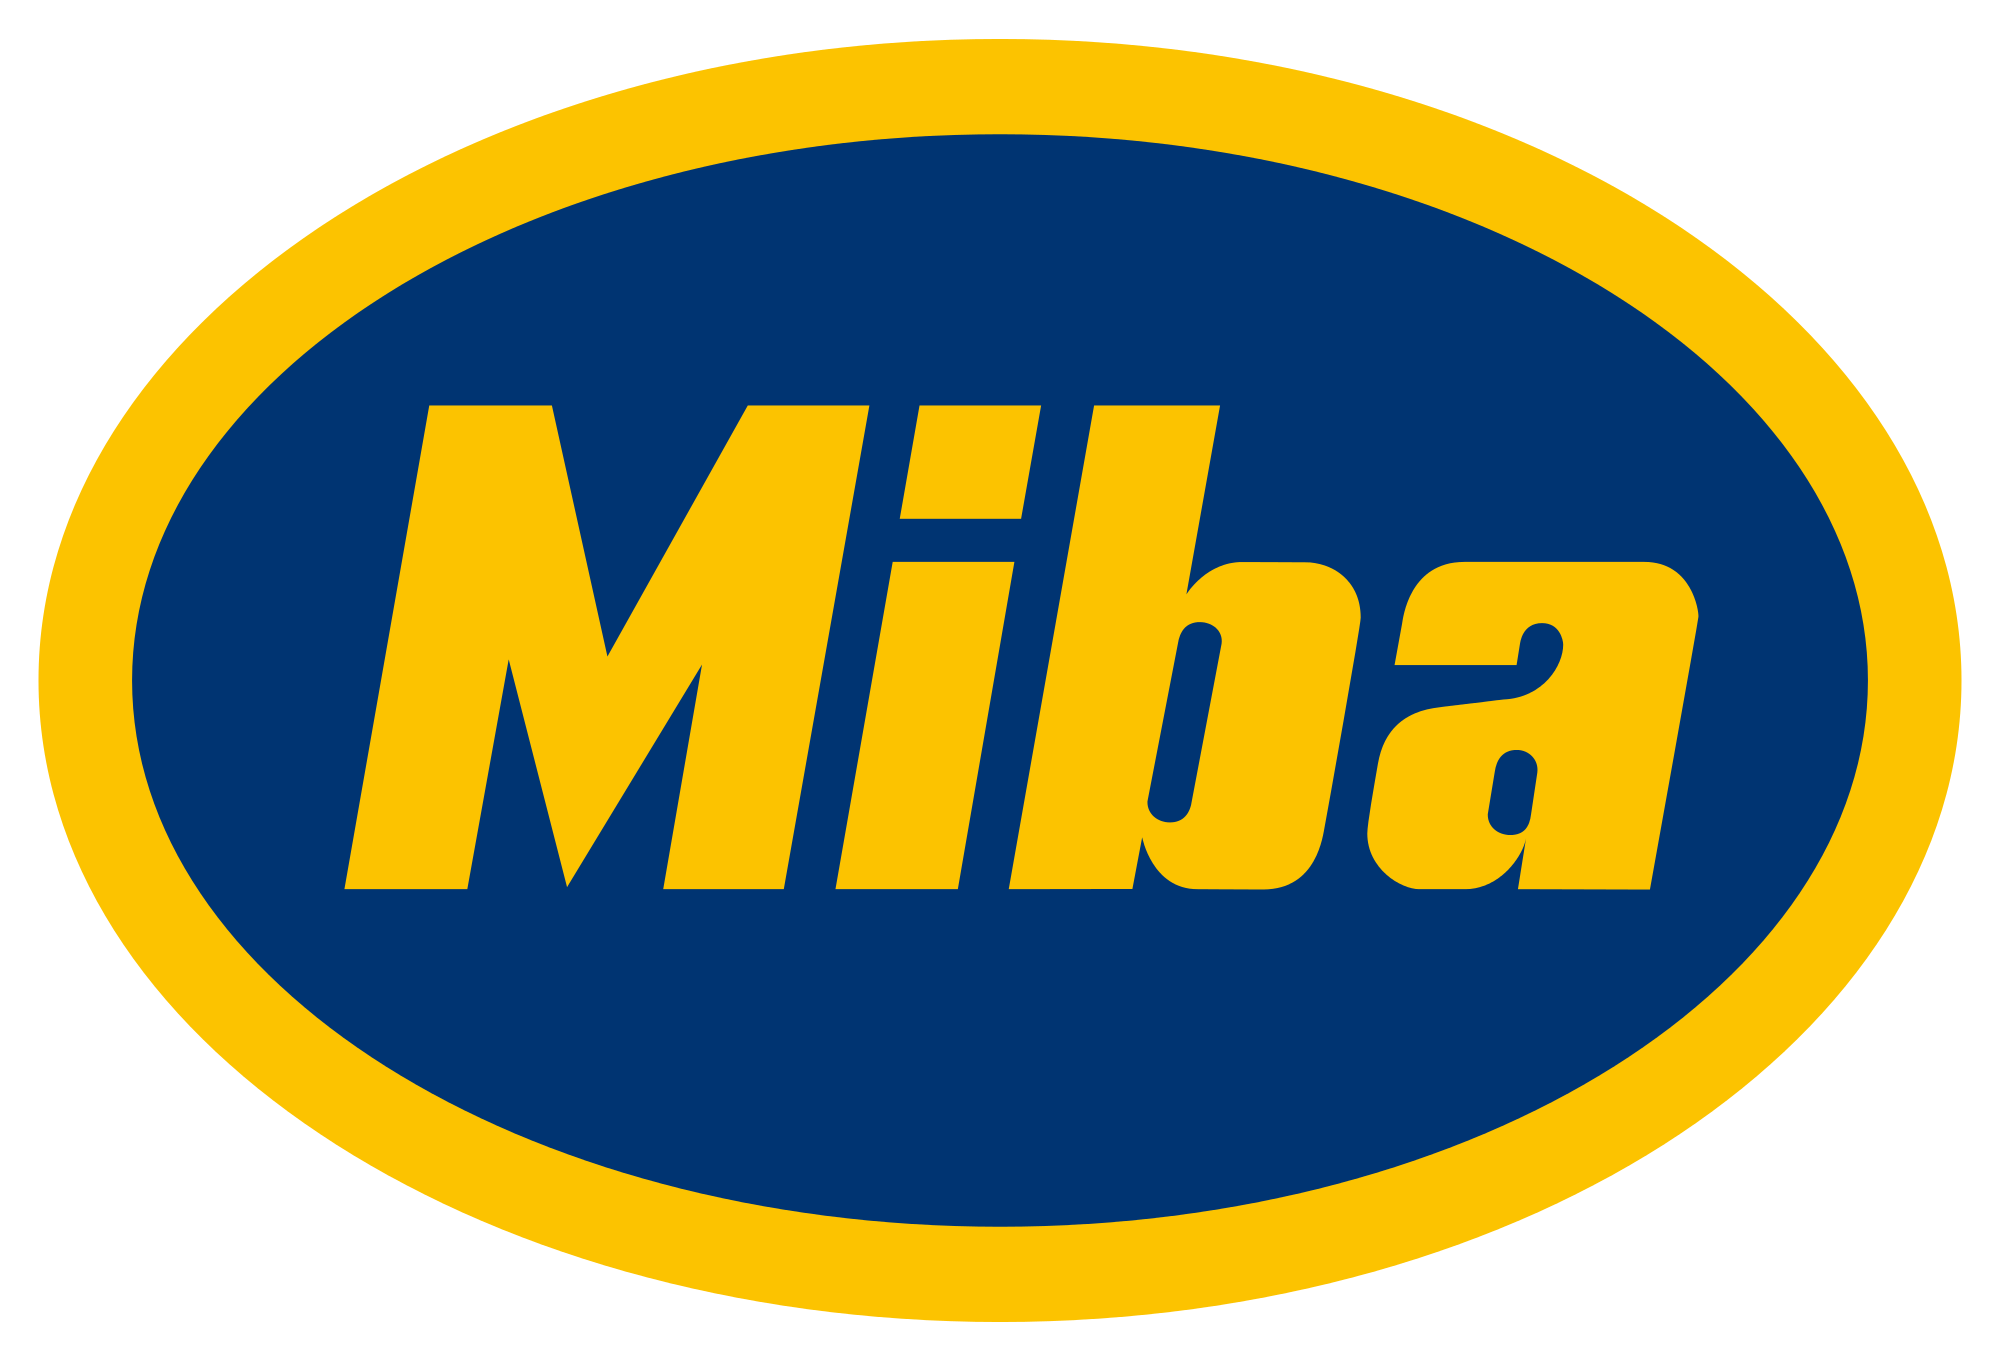 Logo Miba